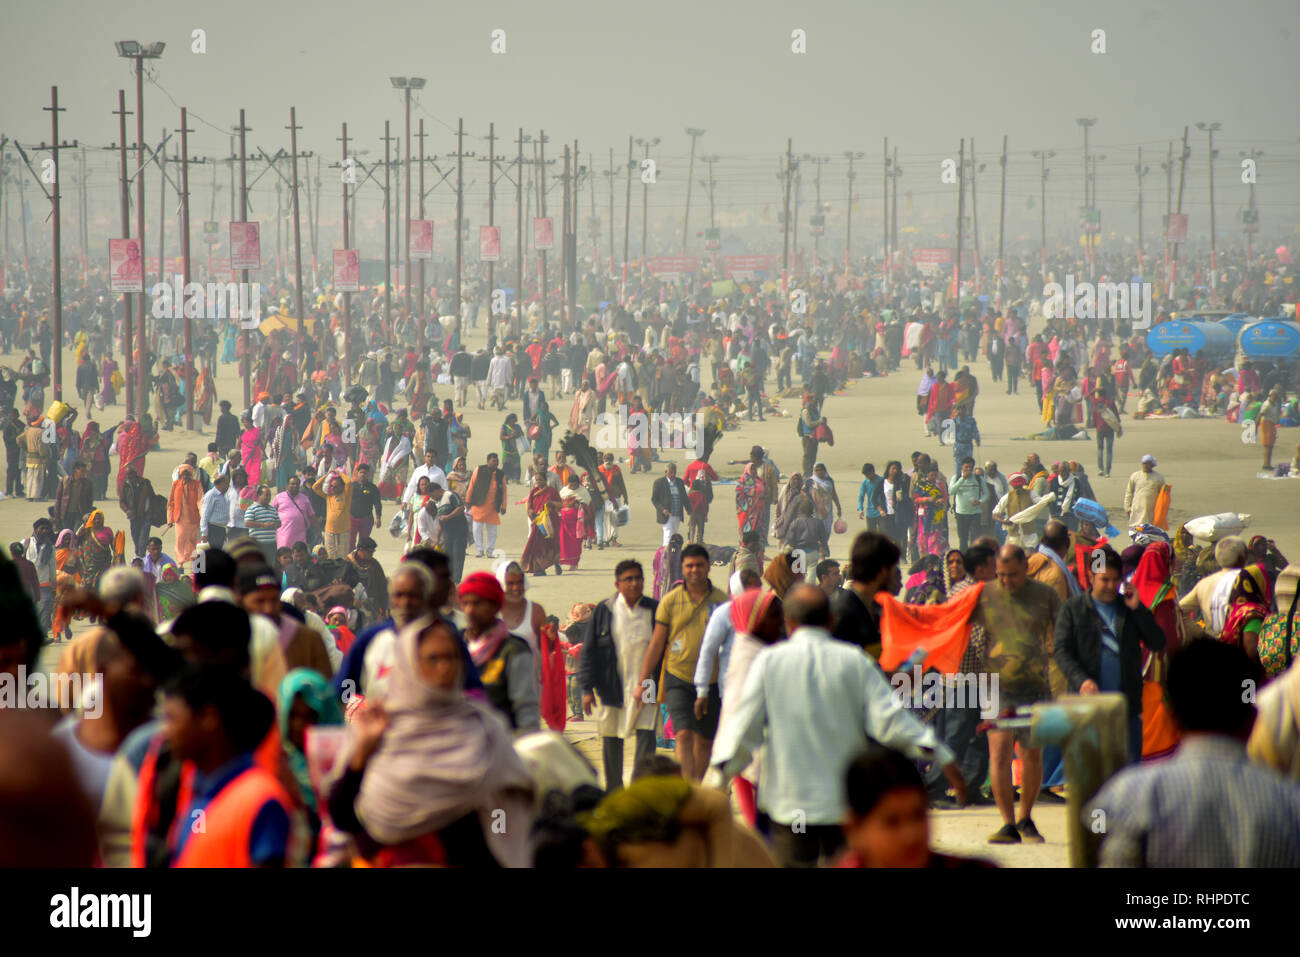 Riesige Menge der Pilger während der pilgerfahrt gesehen. Kumbh Mela, einer der größten Gemeinde des Menschen auf der Erde. 3 crore Leute werden erwartet am Tag der zweiten Shahi Snan am 4. Februar und Arrangements sind entsprechend in Prayagraj gemacht. Stockfoto